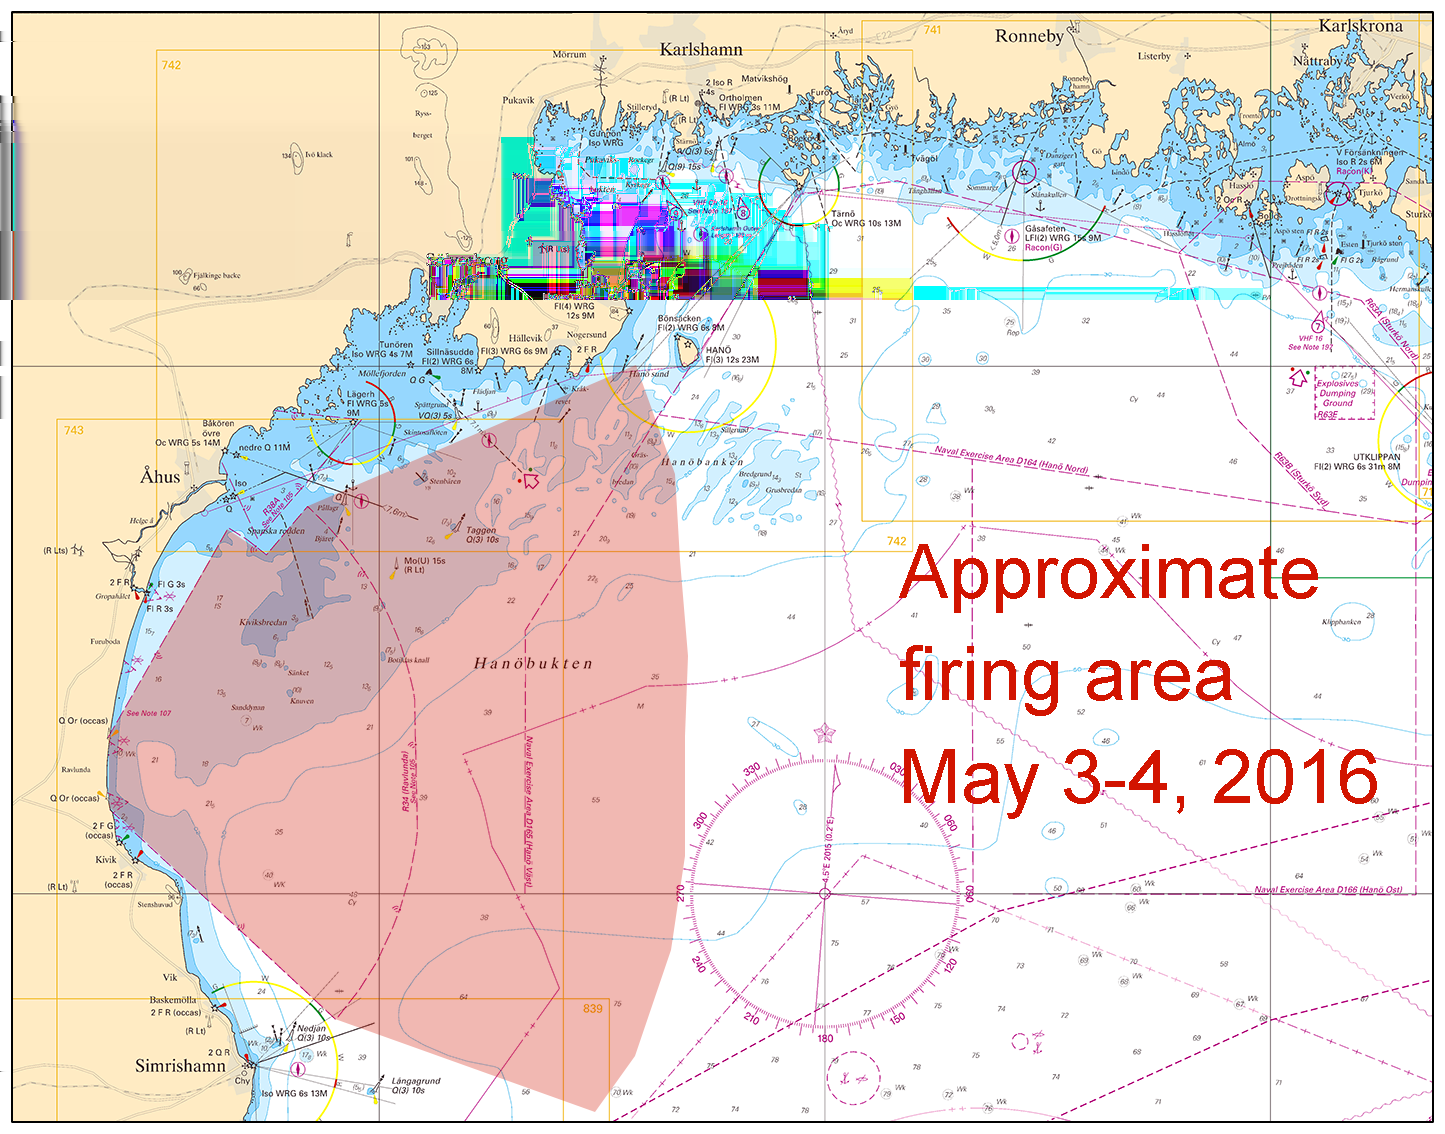 2016-04-28 13 Nr 596 Position: Ca 55-46N 014-20E Restriktionsområde R34 RAVLUNDA OBS! 2-4 maj pågår skjutningar utanför det i sjökortet markerade skjutområdet!